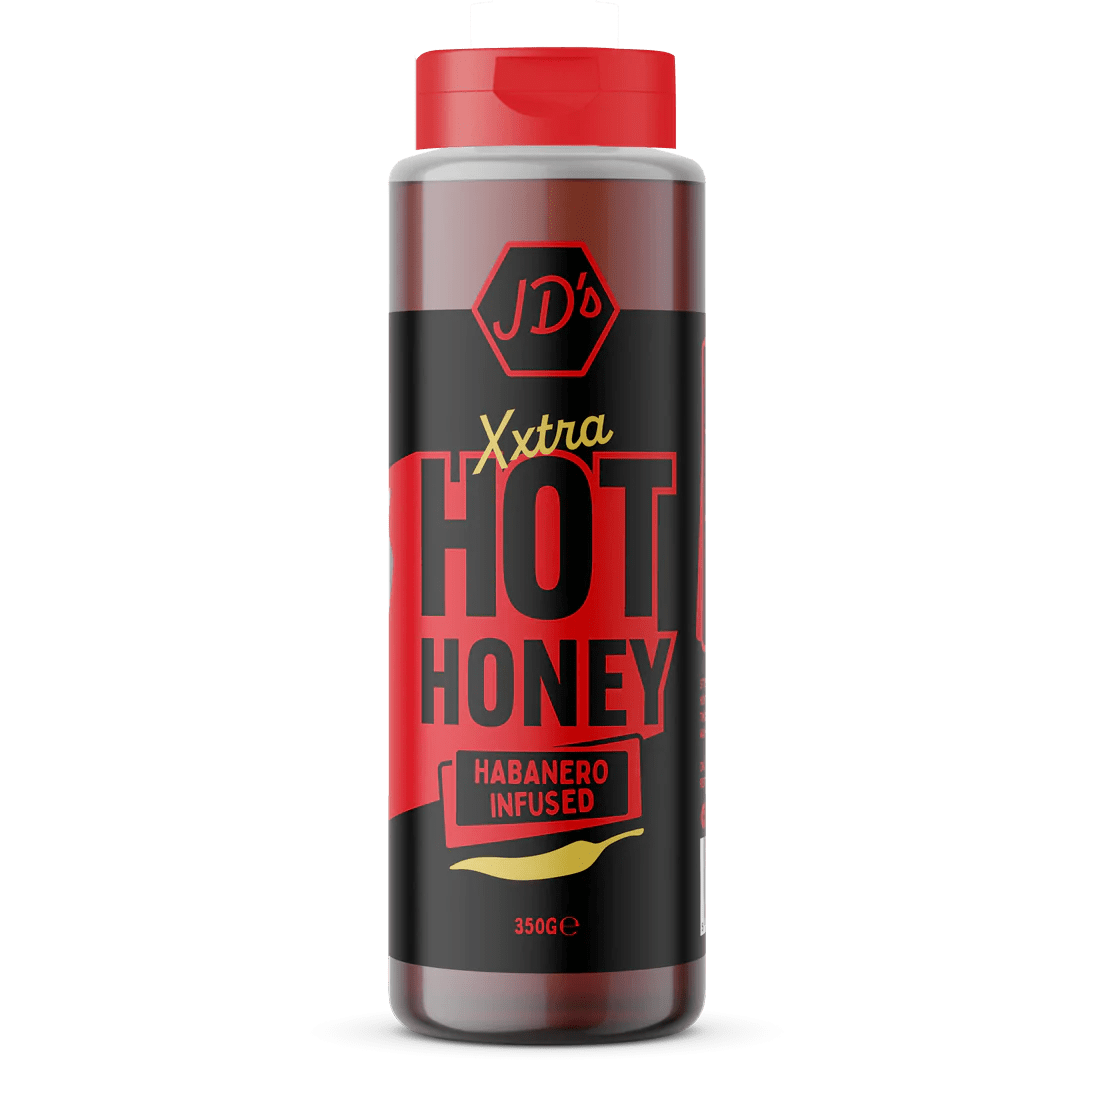 JD'S Hot Xxtra Hot Honey